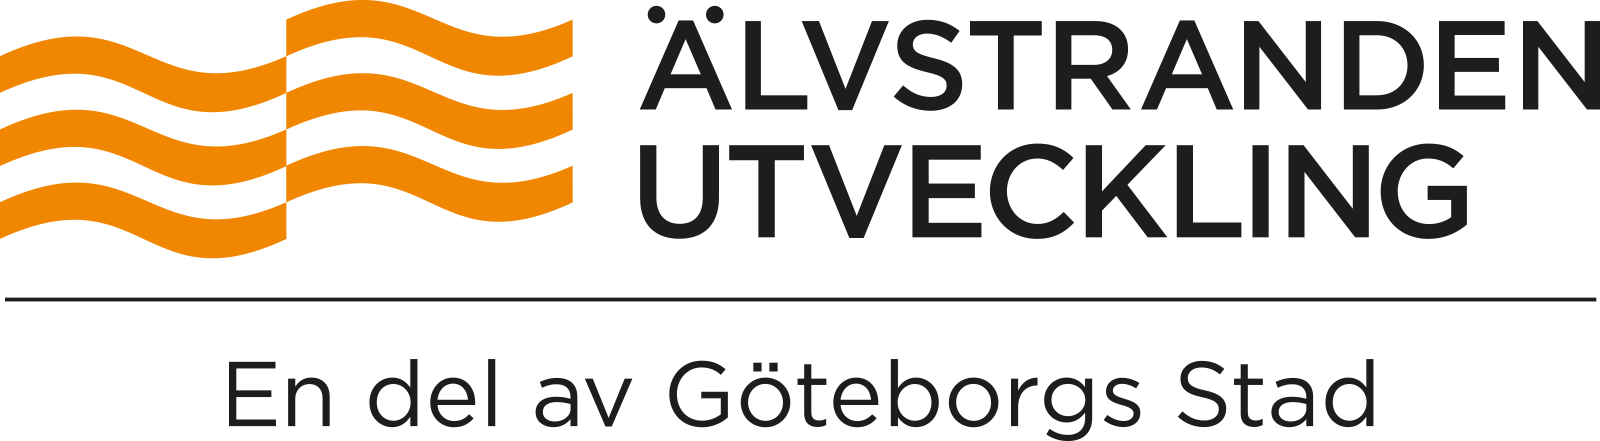 Älvstranden Utveckling - En del av Göteborgs Stad - logga